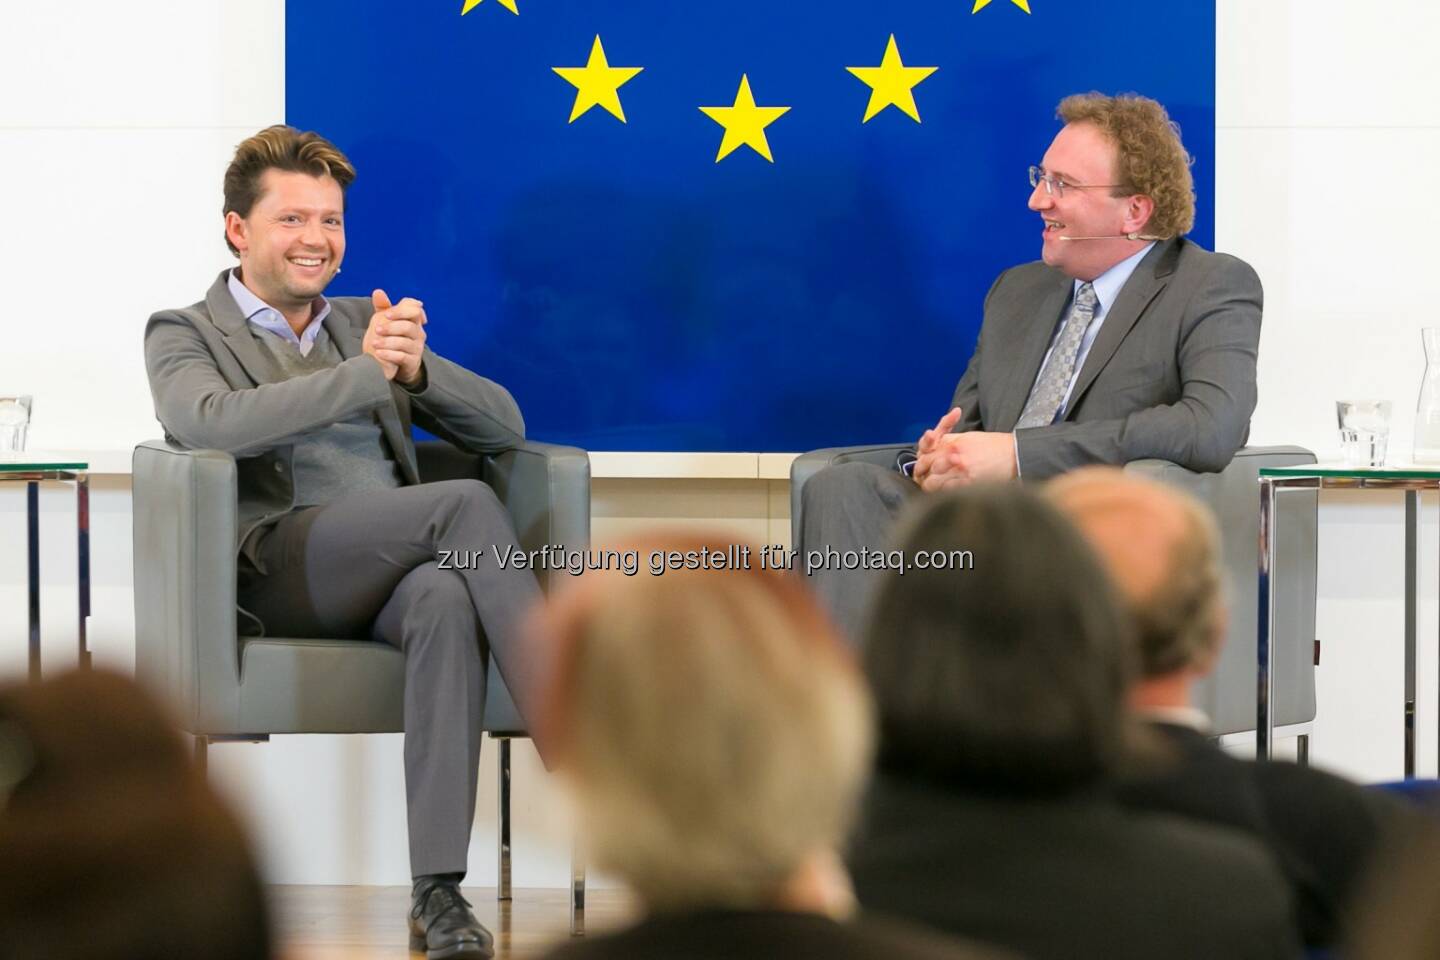 Julian Rachlin und Benedikt Weingartner: Vertretung der EU-Kommission in Österreich: Julian Rachlin im Haus der EU: Europa bedeutet offene Grenzen,
Freiheit und Vielfalt